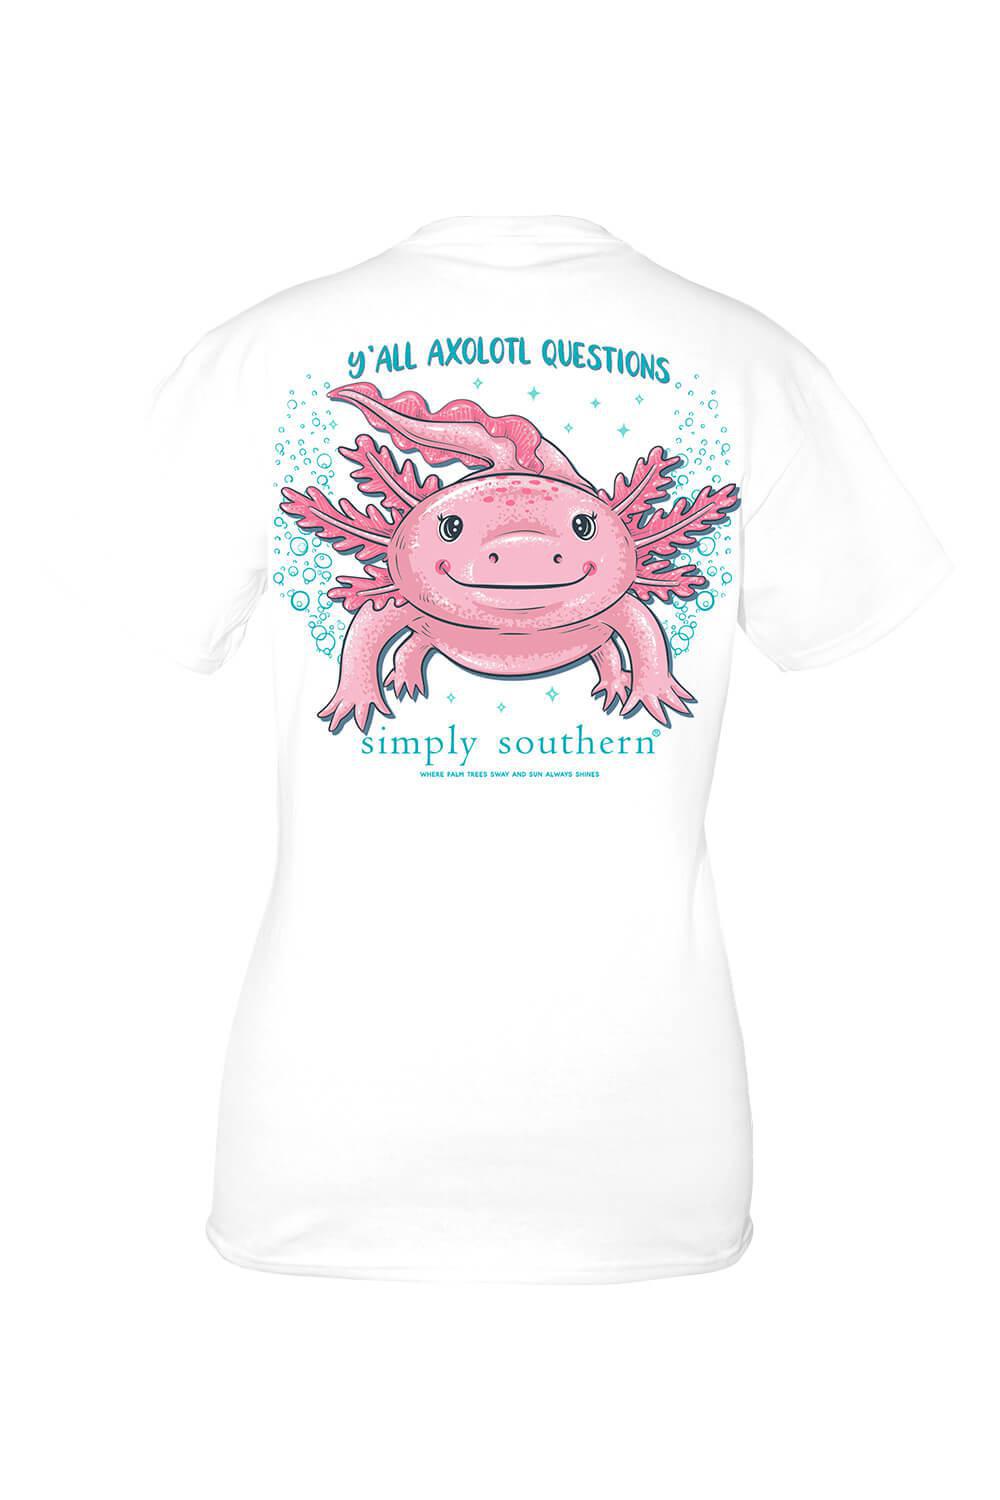 YTH Axolotl Tee